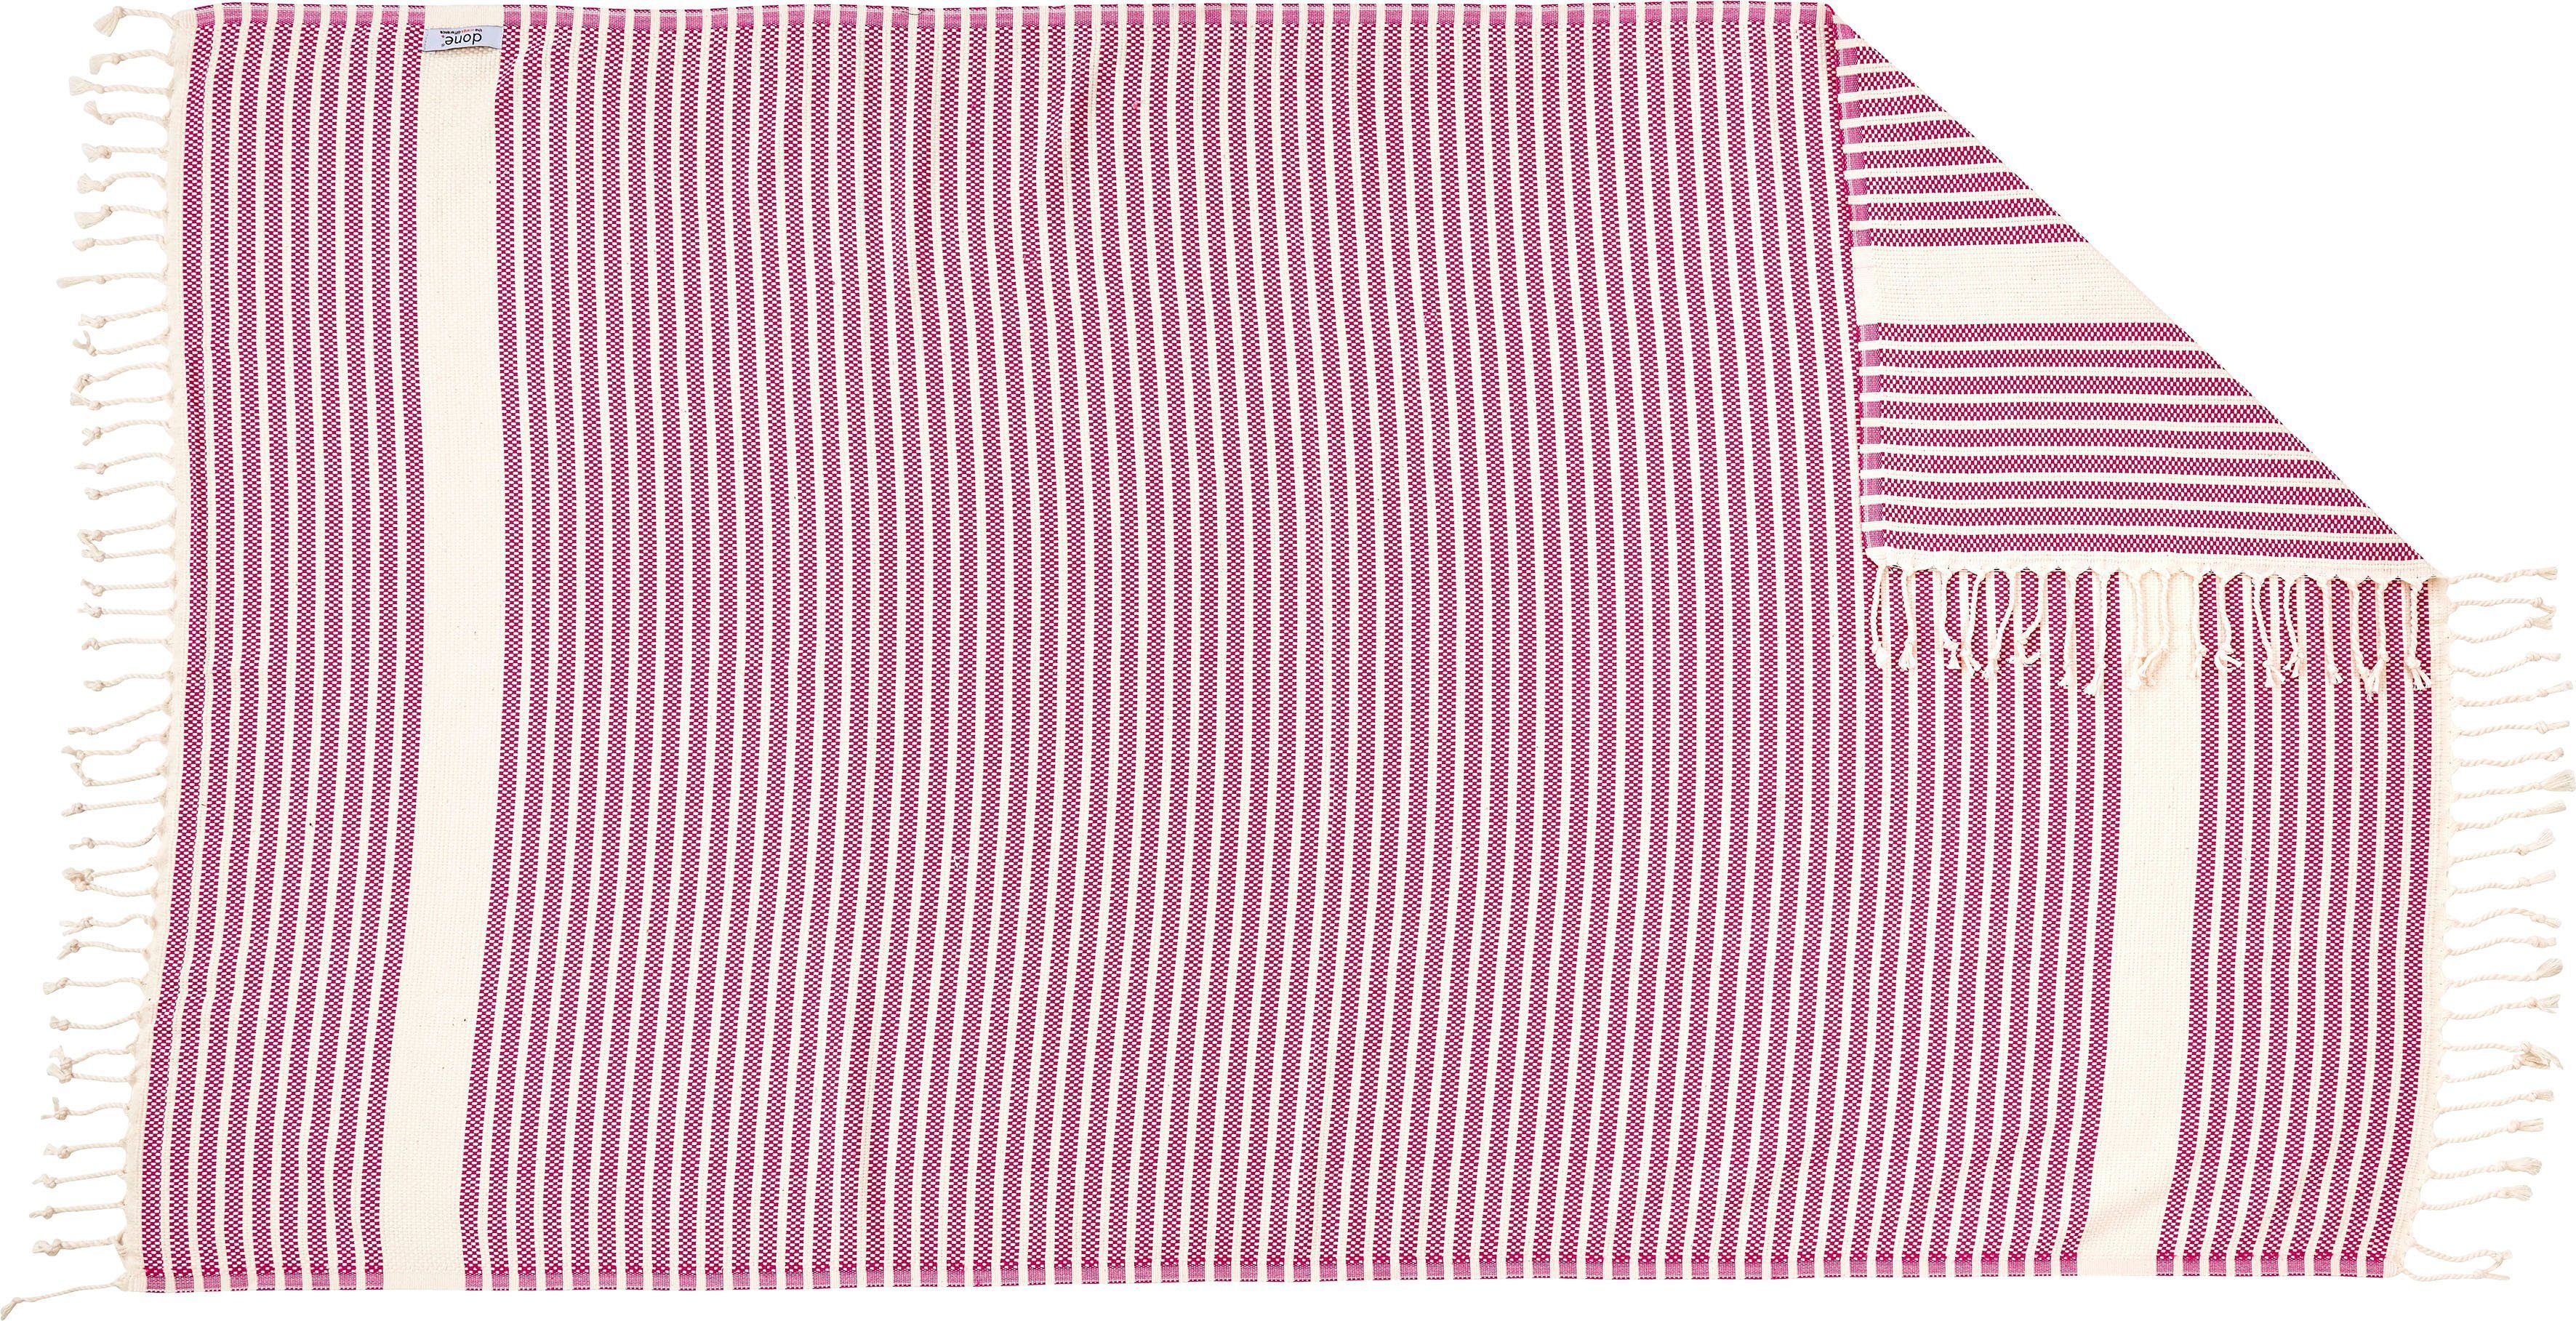 Fransen geknoteten mit Stripes, Leichtes Lounge done.®, Plaid pink/beige Plaid